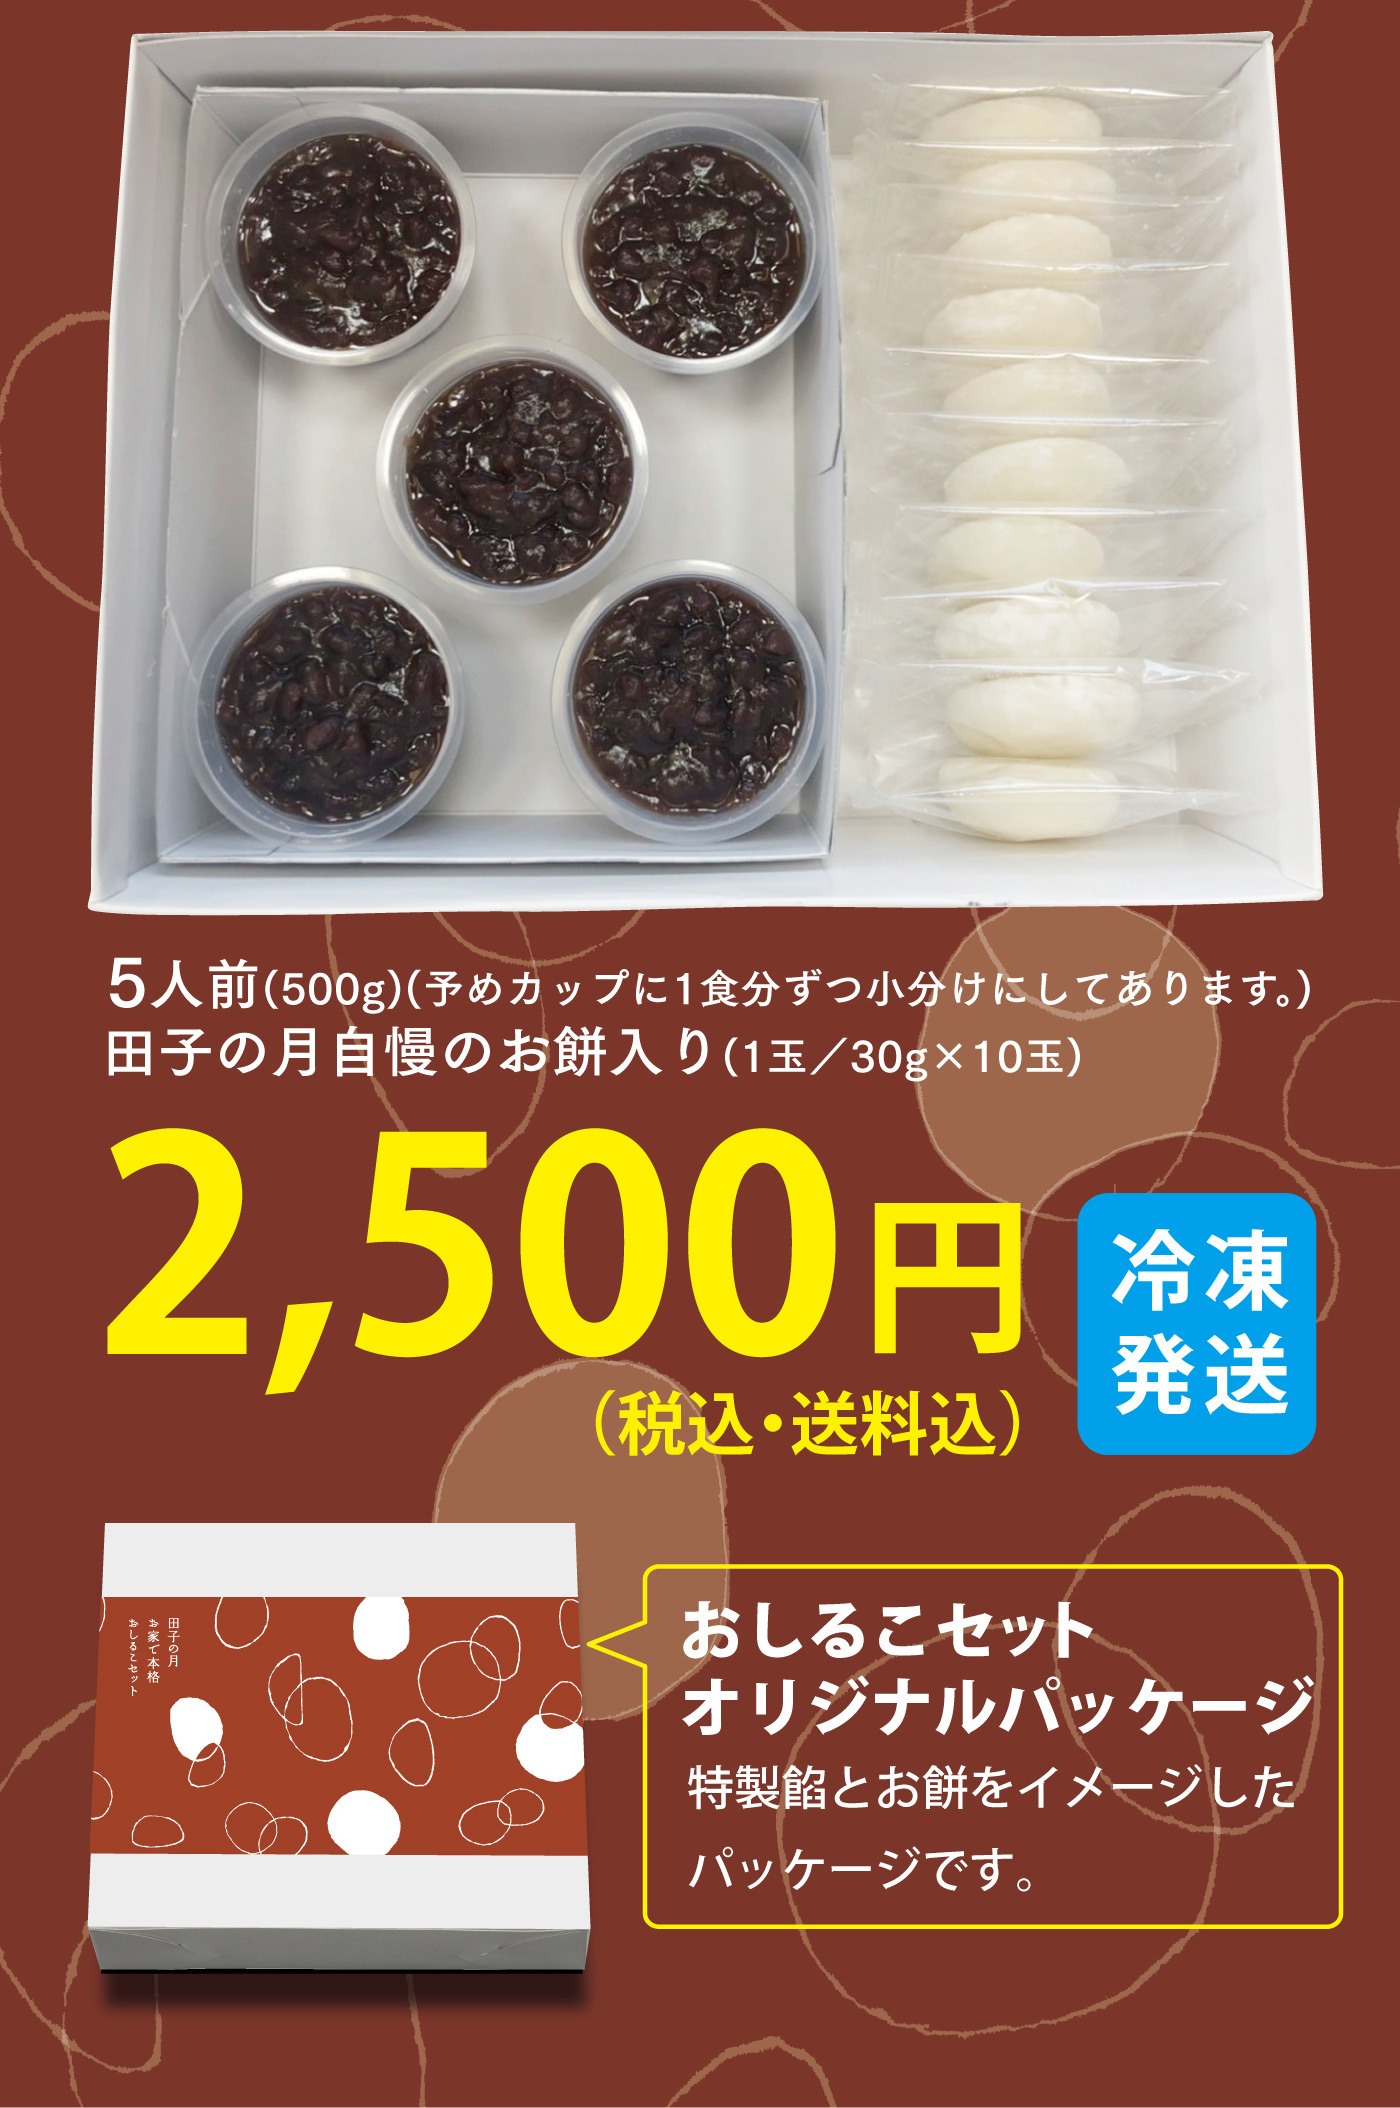 田子の自慢のお餅入り(1玉/30g×10玉)2,500円(税込・送料込)冷凍発送おしるこセットオリジナルパッケージ特製餡とお餅をイメージしたパッケージです。